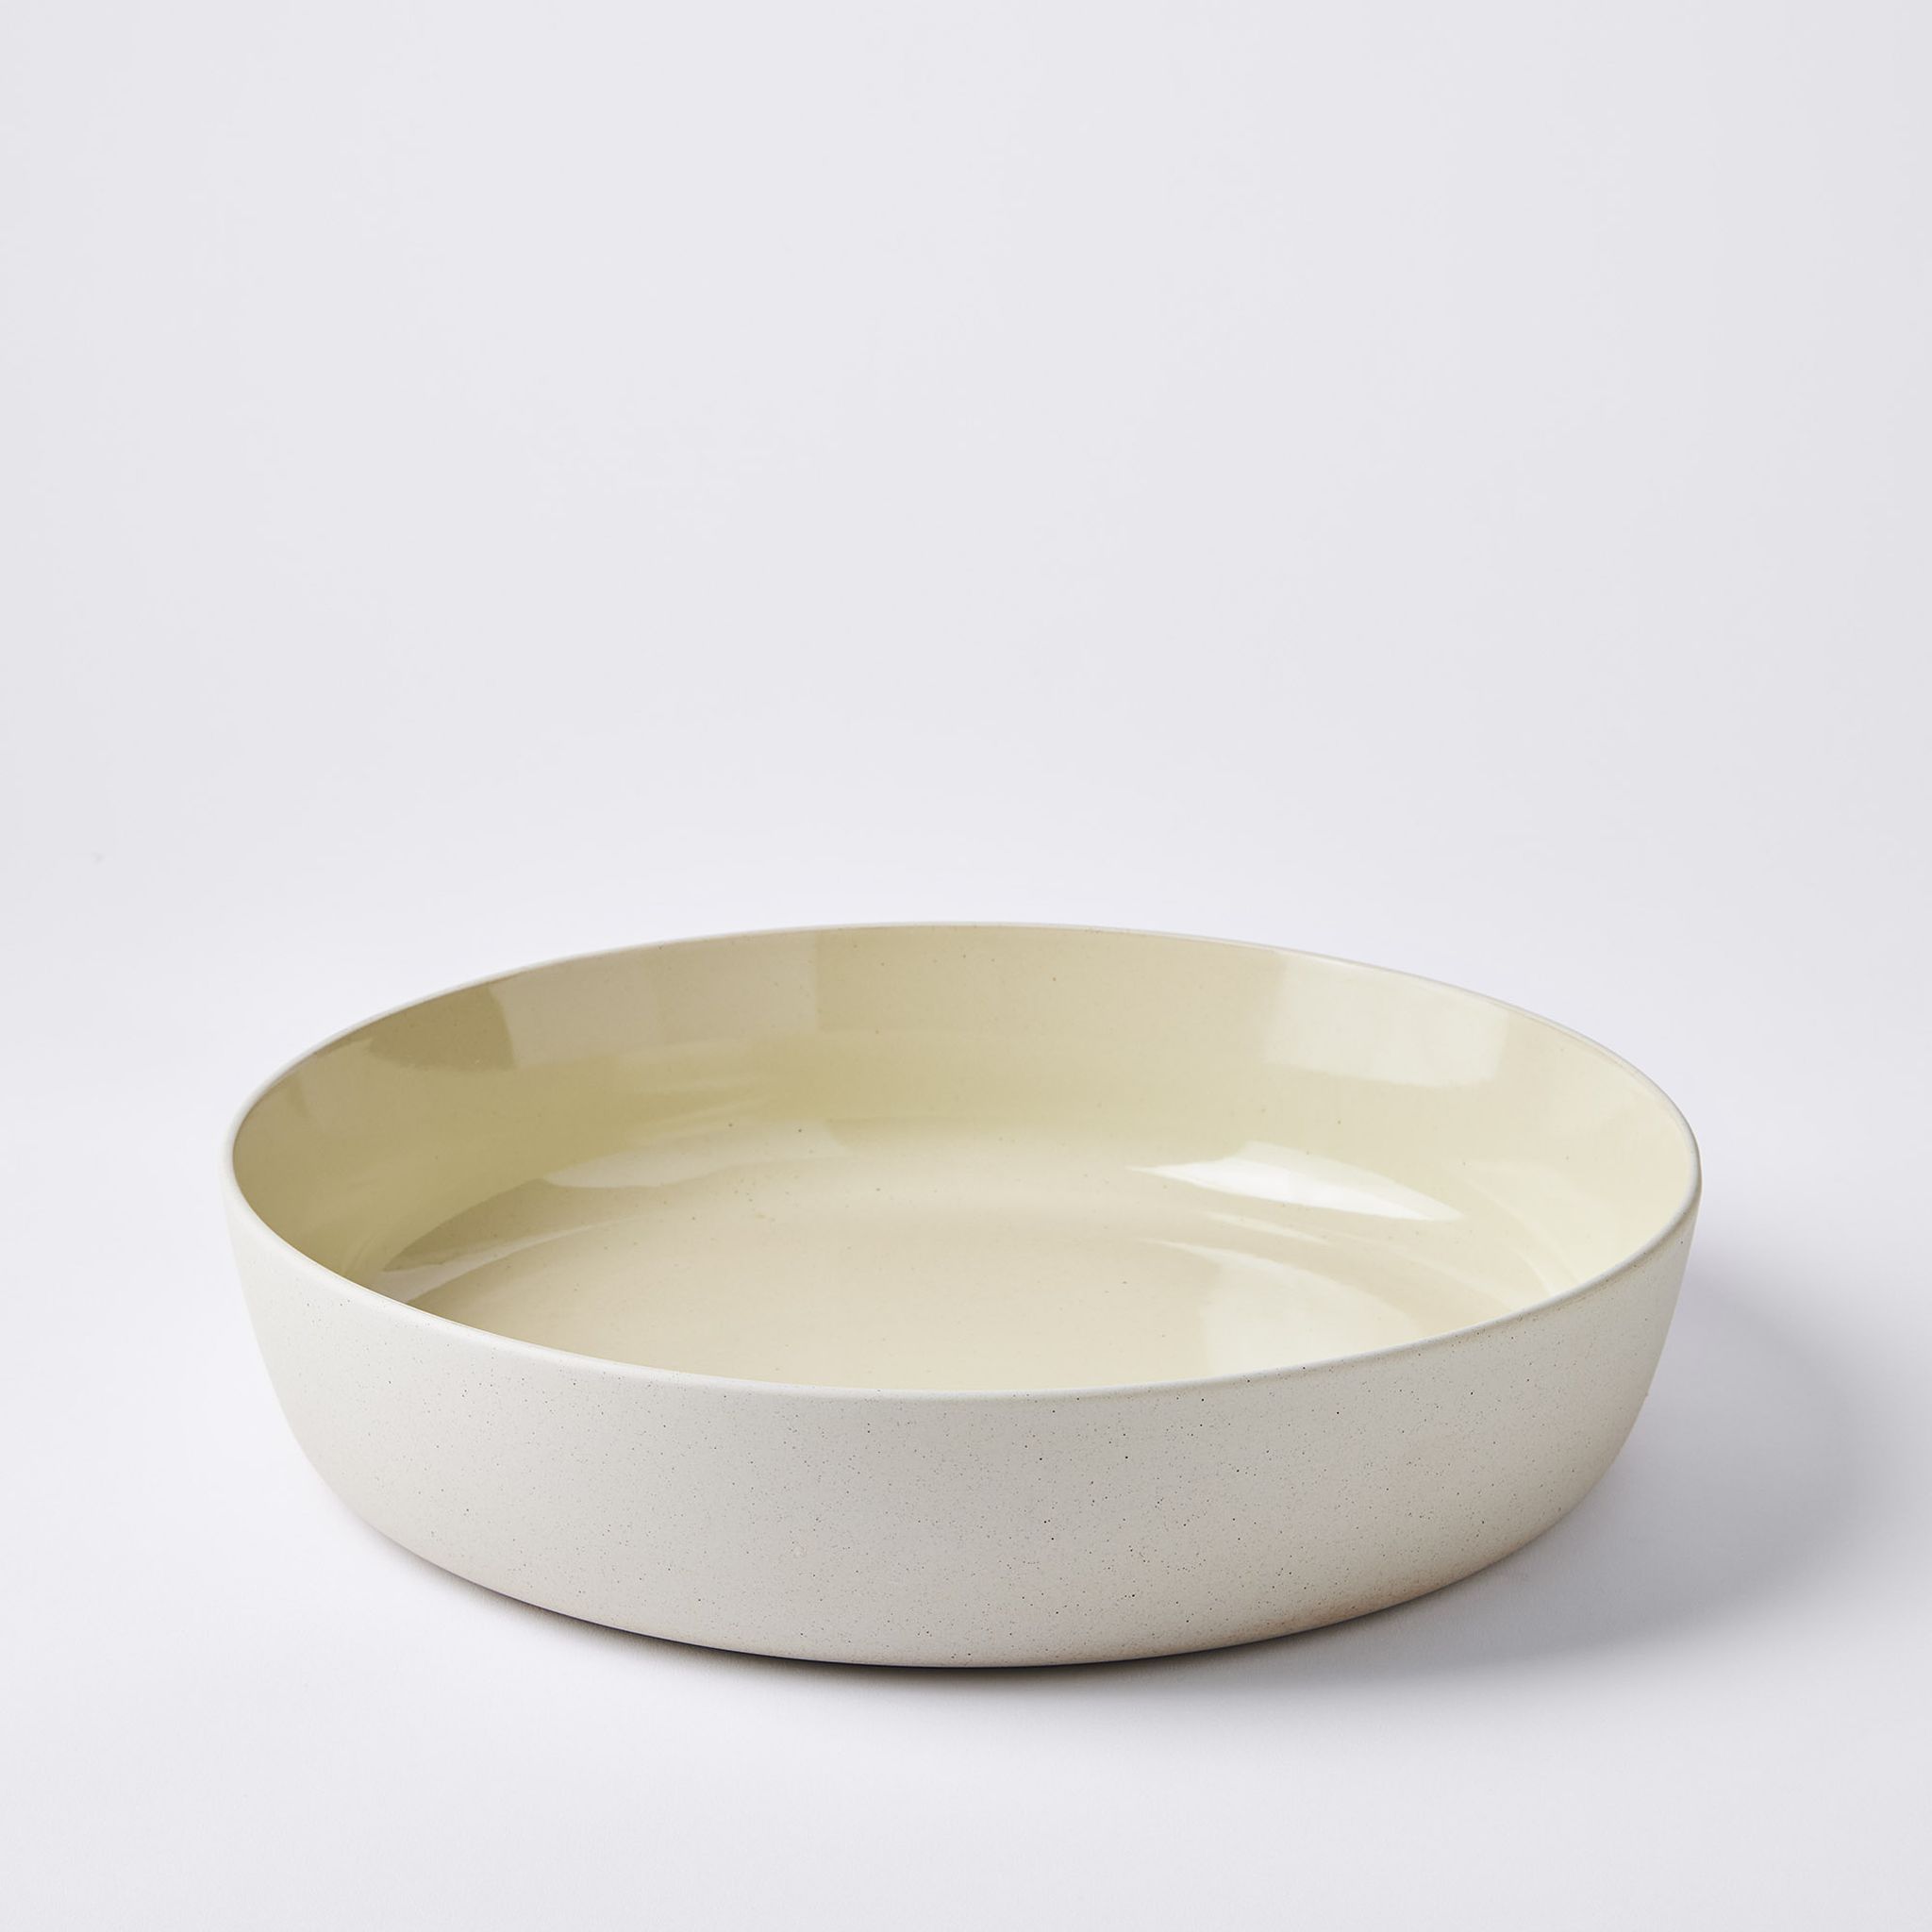 https://images.food52.com/iGb0pVEXUlPjPDgK-l-48tjxxGM=/2048x2048/47aaaa86-5657-470d-a037-f645b496294a--2022-0517_blomus_sablo-ceramic-shallow-serving-bowl_savannah-salad-bowl_silo_ty-mecham.jpg